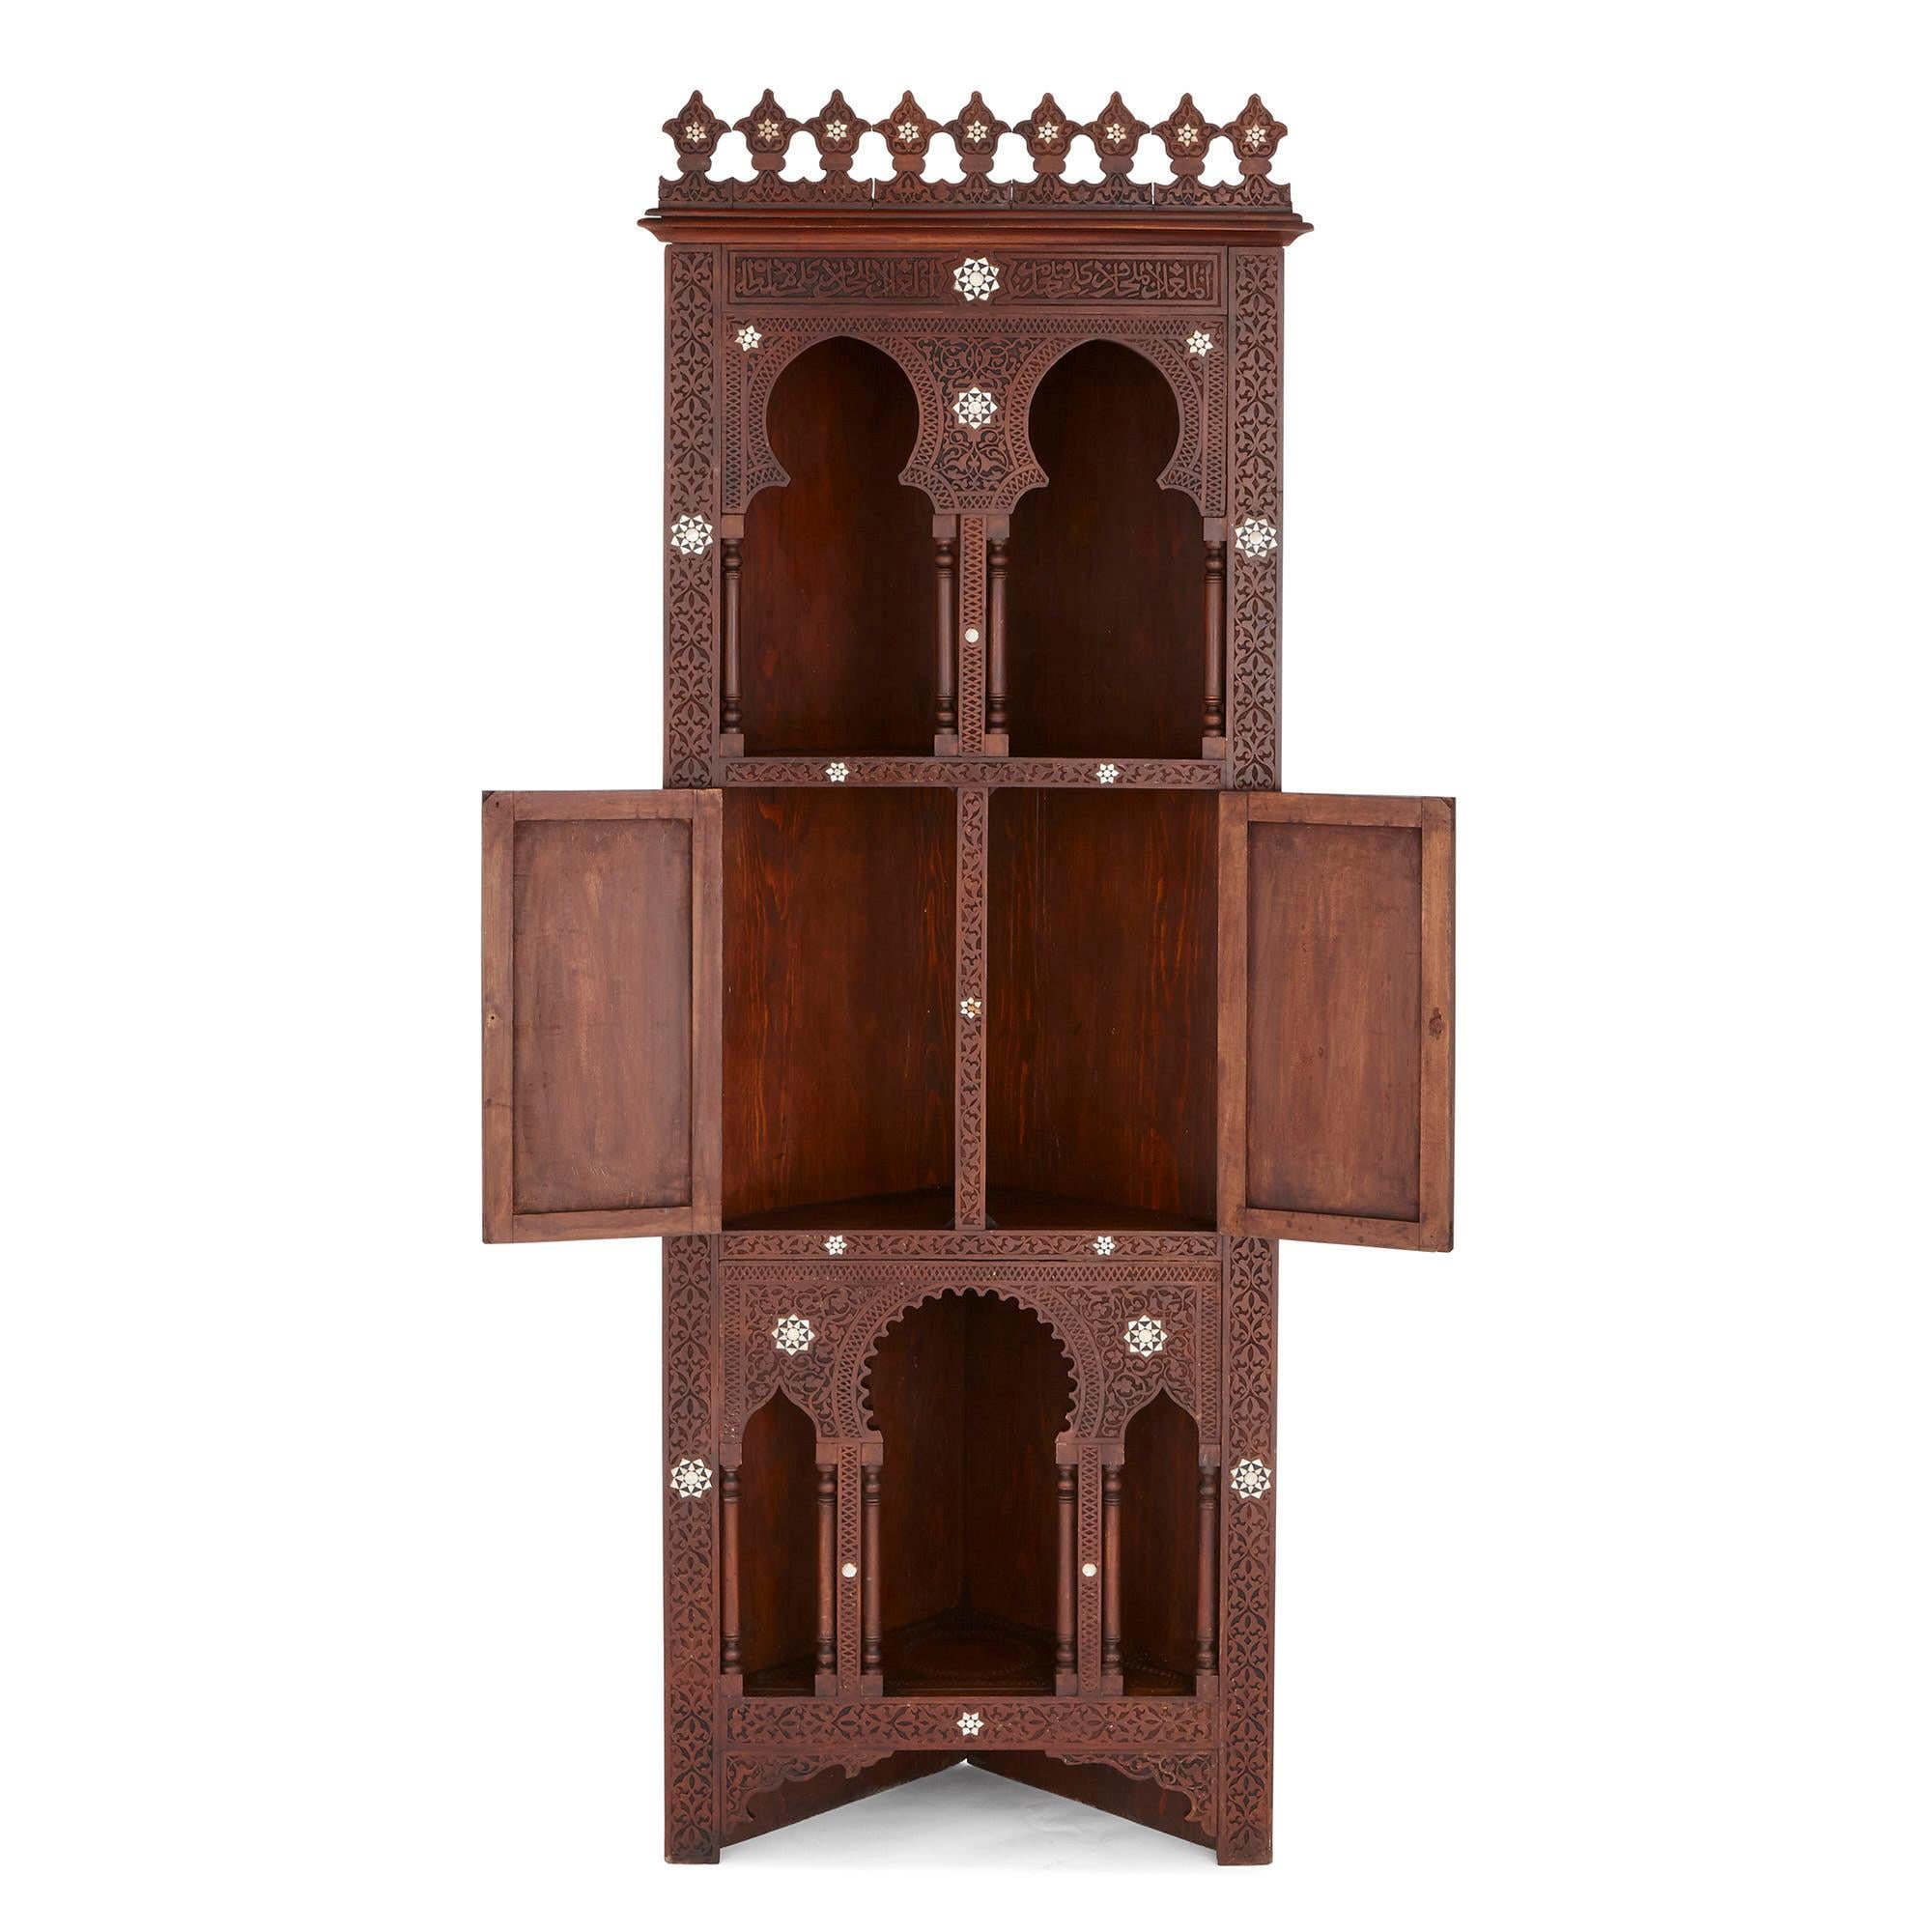 Dieses indo-portugiesische Möbelset – bestehend aus einem hohen Eckschrank, einem Hocker und einem Beistelltisch – ist in einem wunderschönen maurischen Stil gestaltet. Dieser Stil ist eine Variante der islamischen Kunst, die in Nordafrika und in